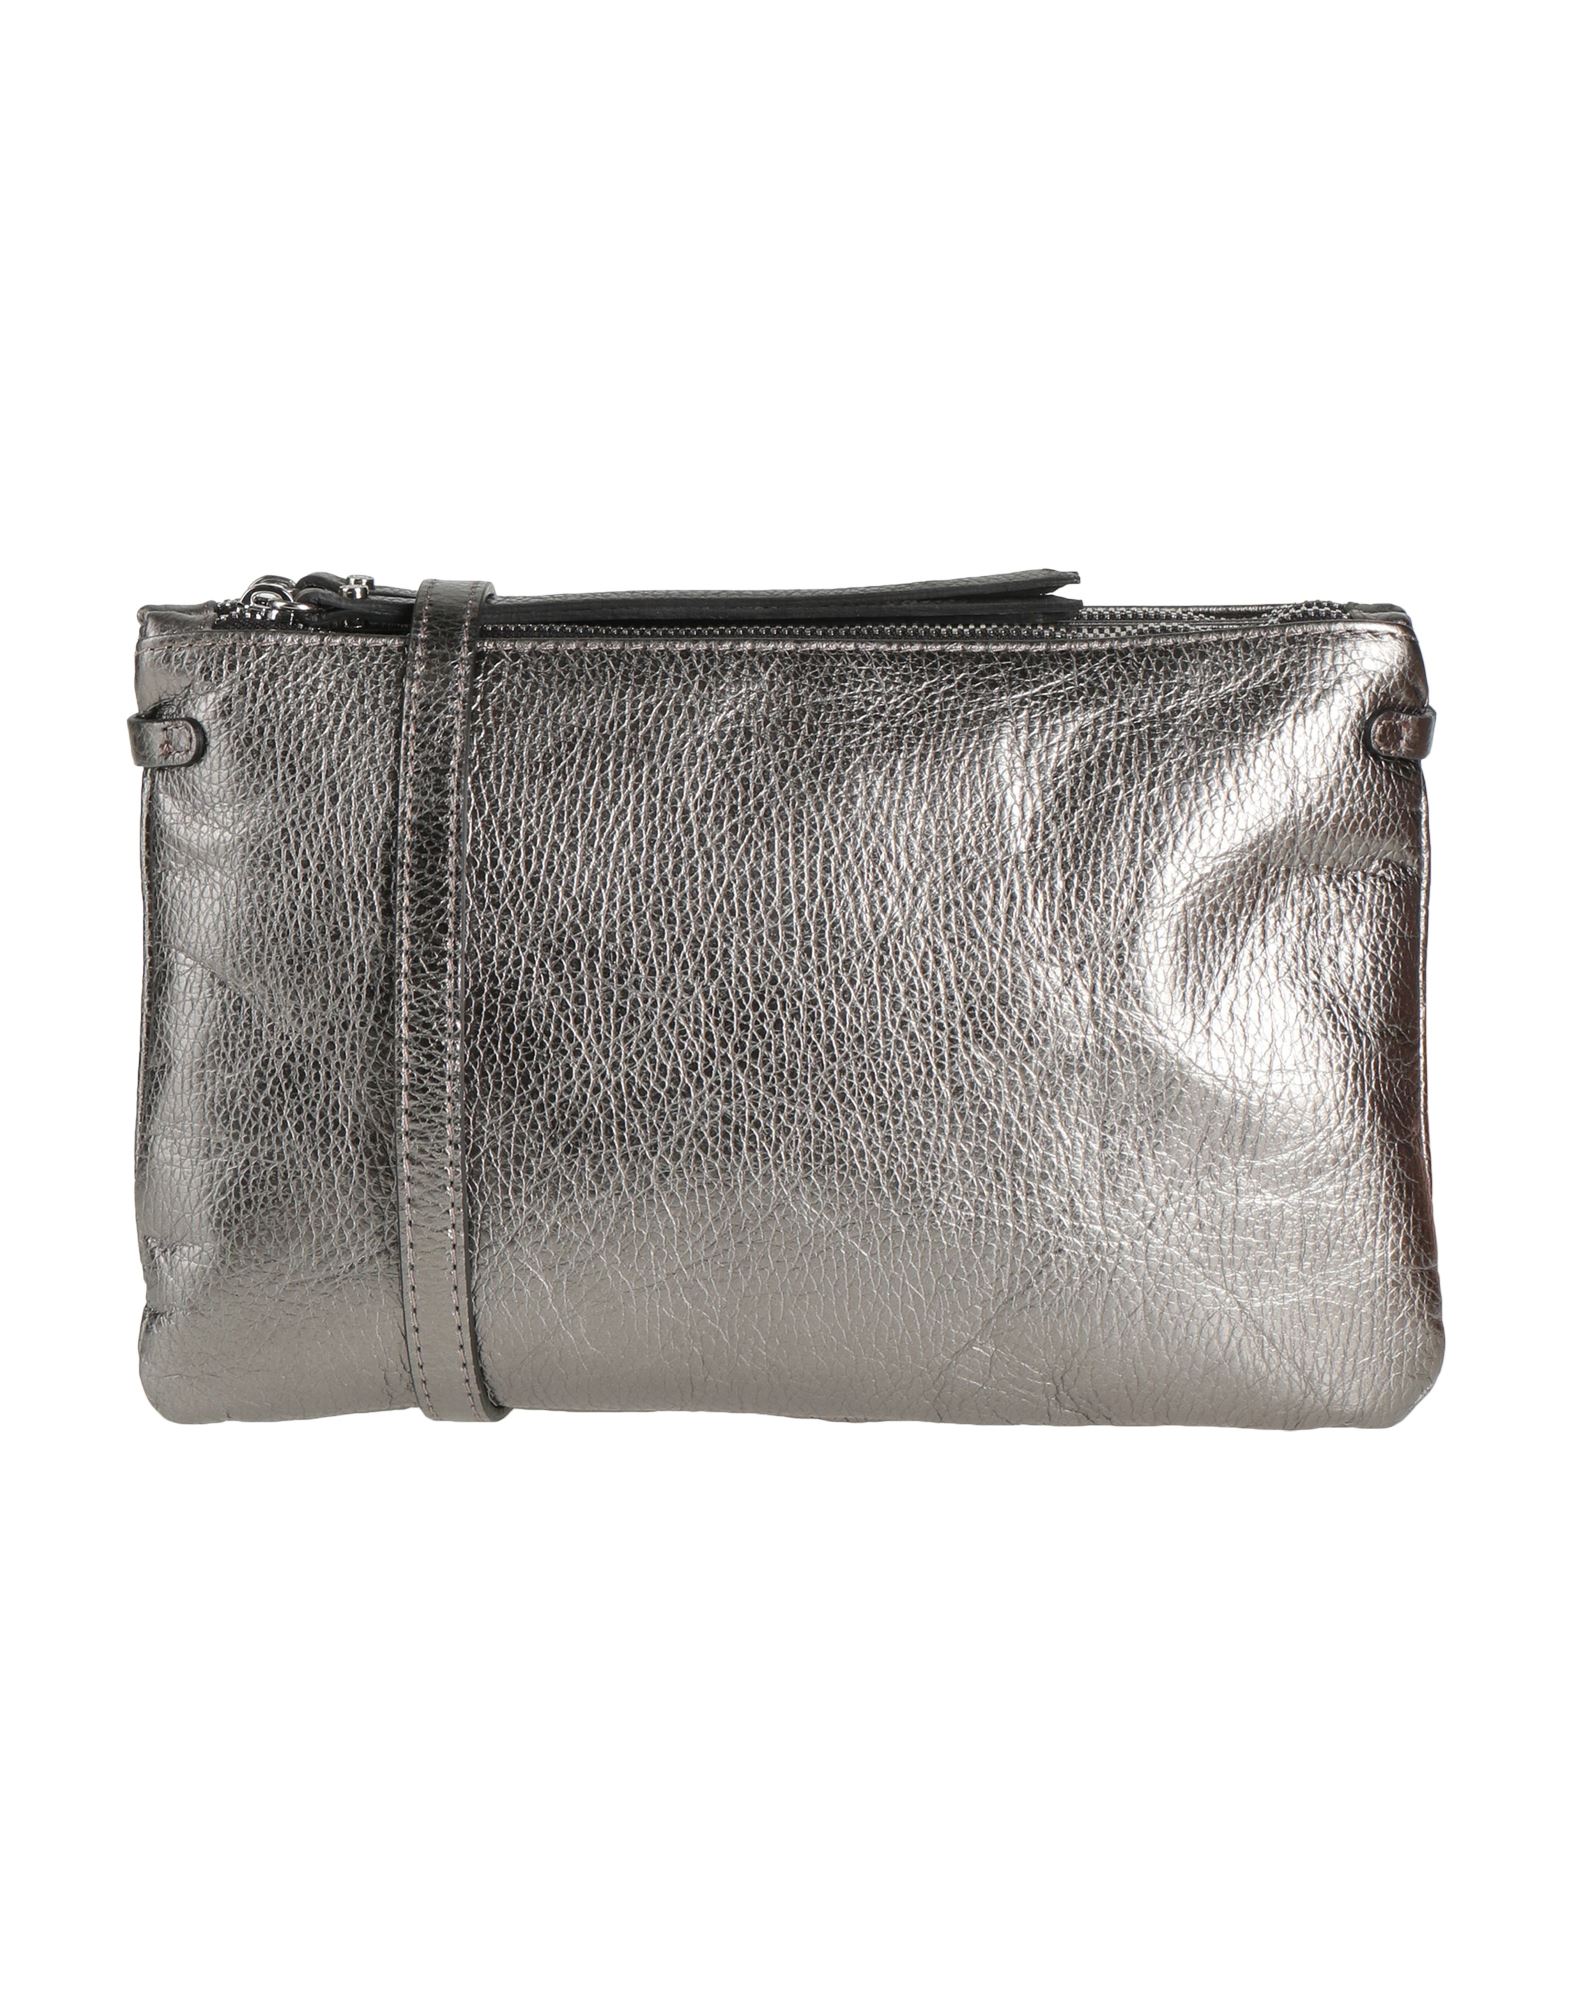 Gianni Chiarini Handbags In Grey